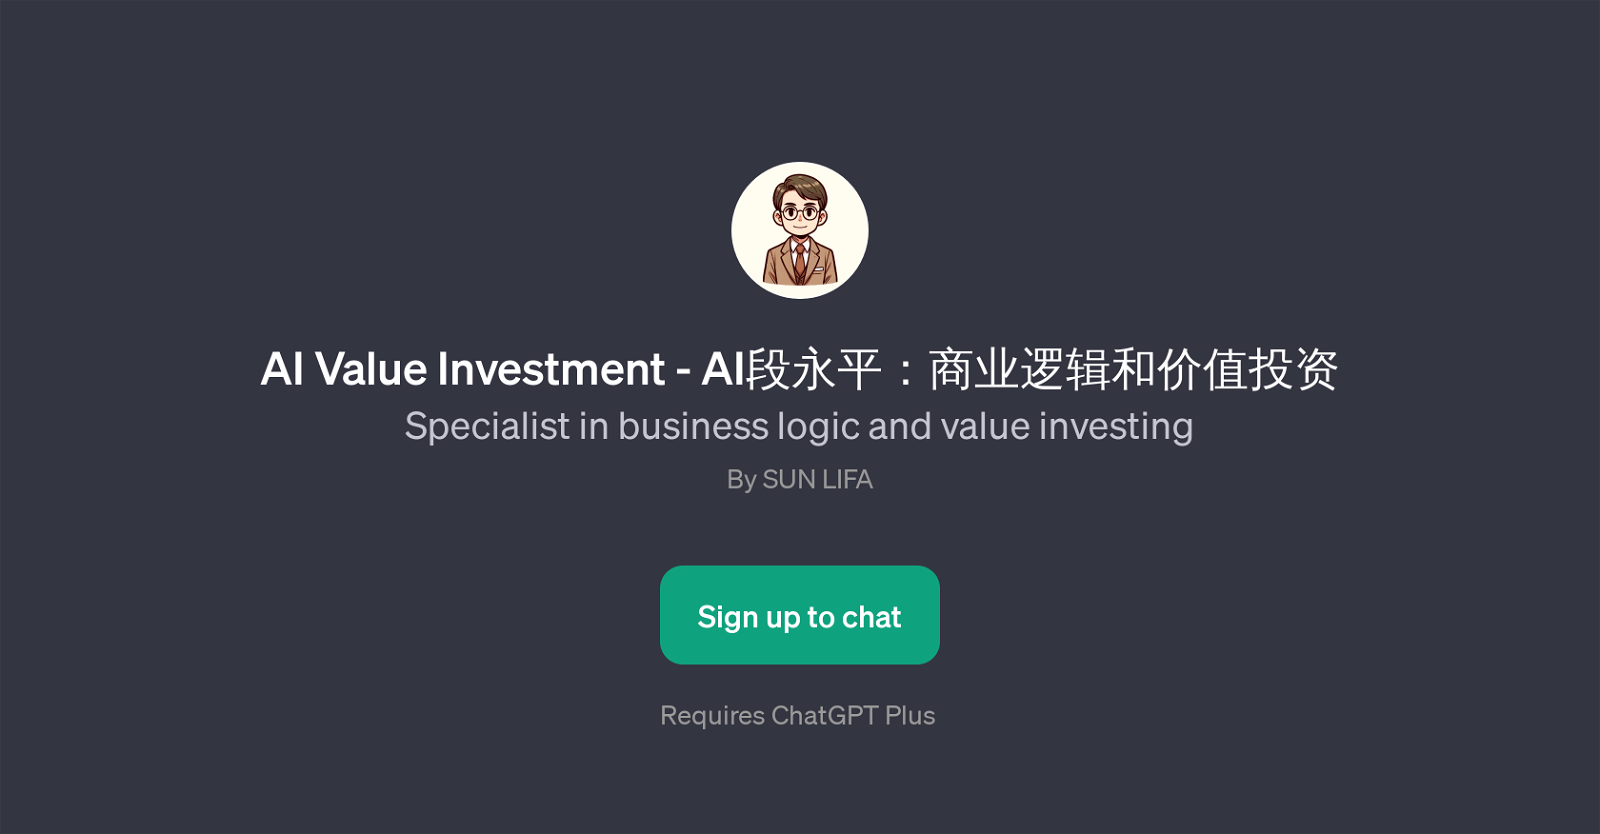 AI Value Investment website